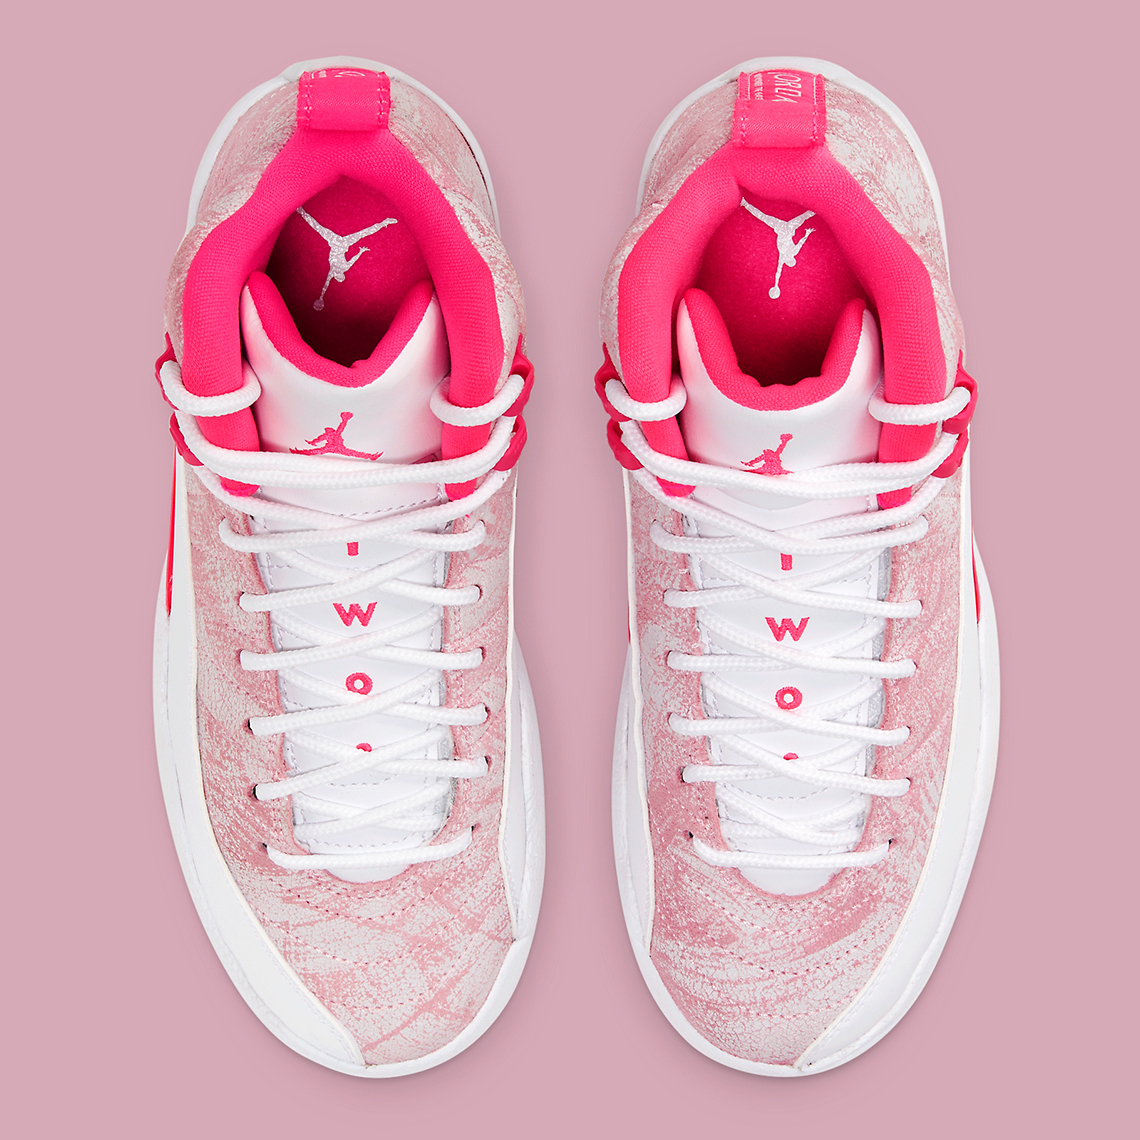 pink white 12s jordans